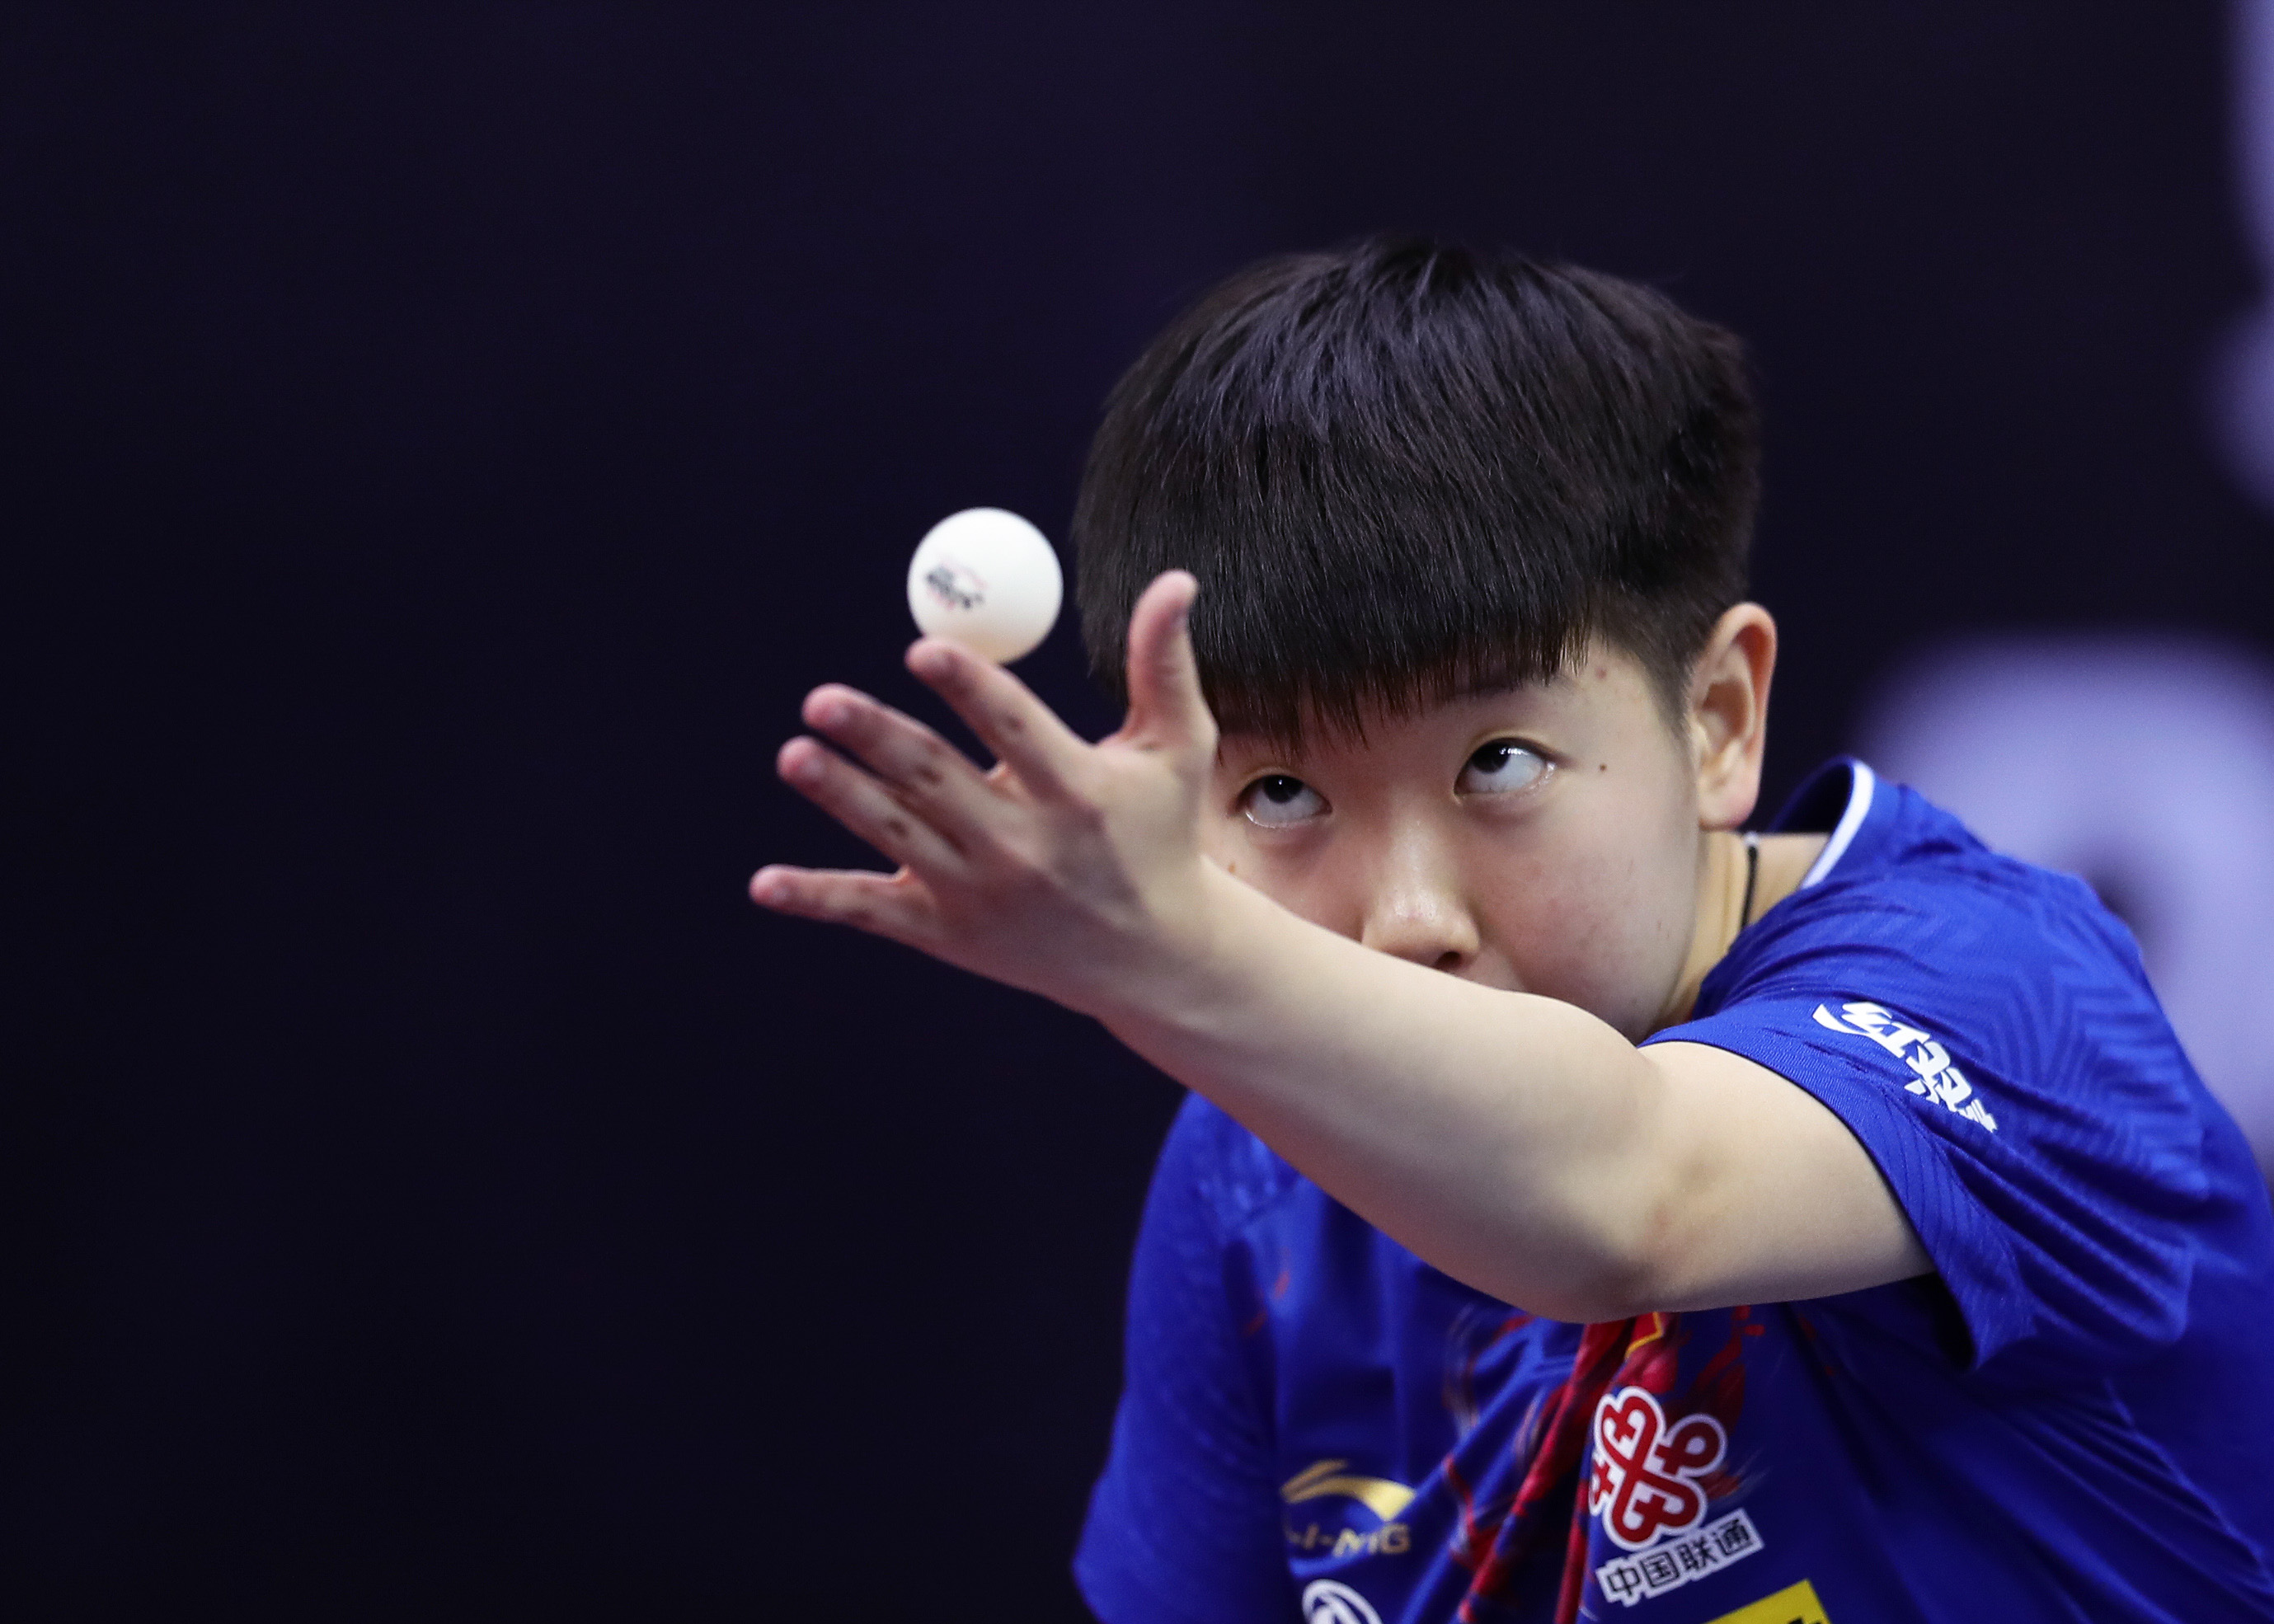 当日,在深圳进行的国际乒联世界巡回赛2019中国乒乓球公开赛女子单打